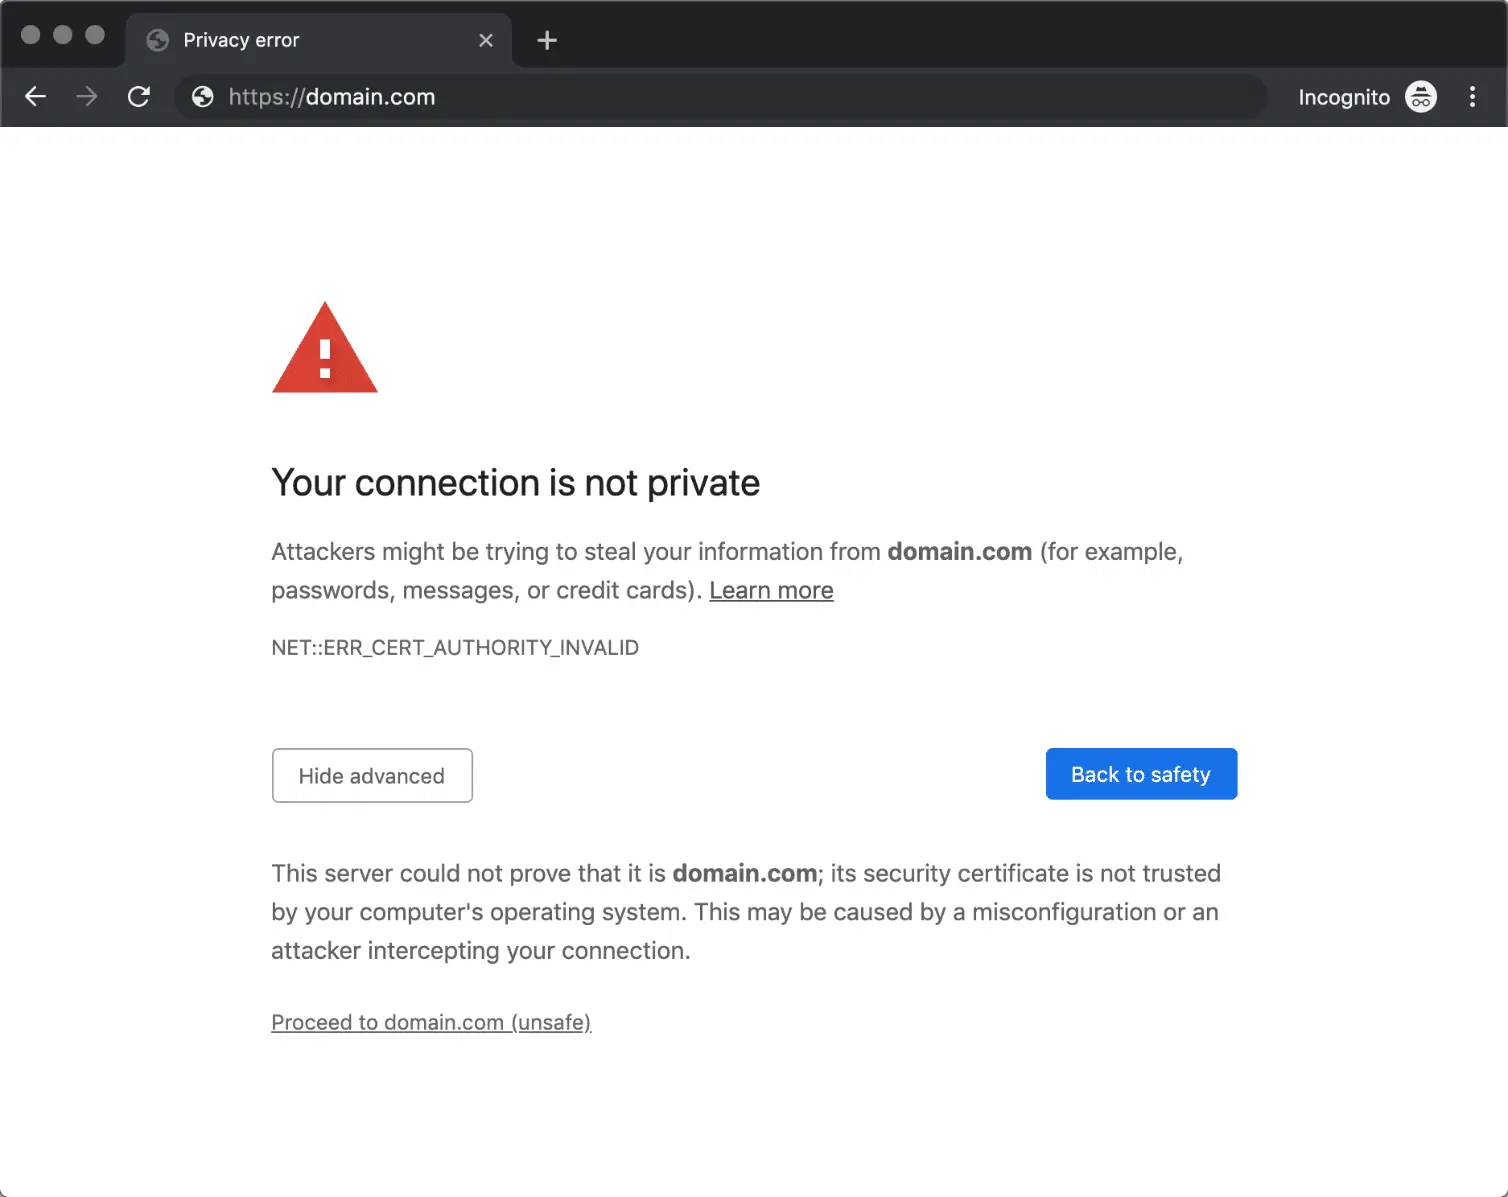 Privacy error, net::err_cert_authority_invalid on Google Chrome